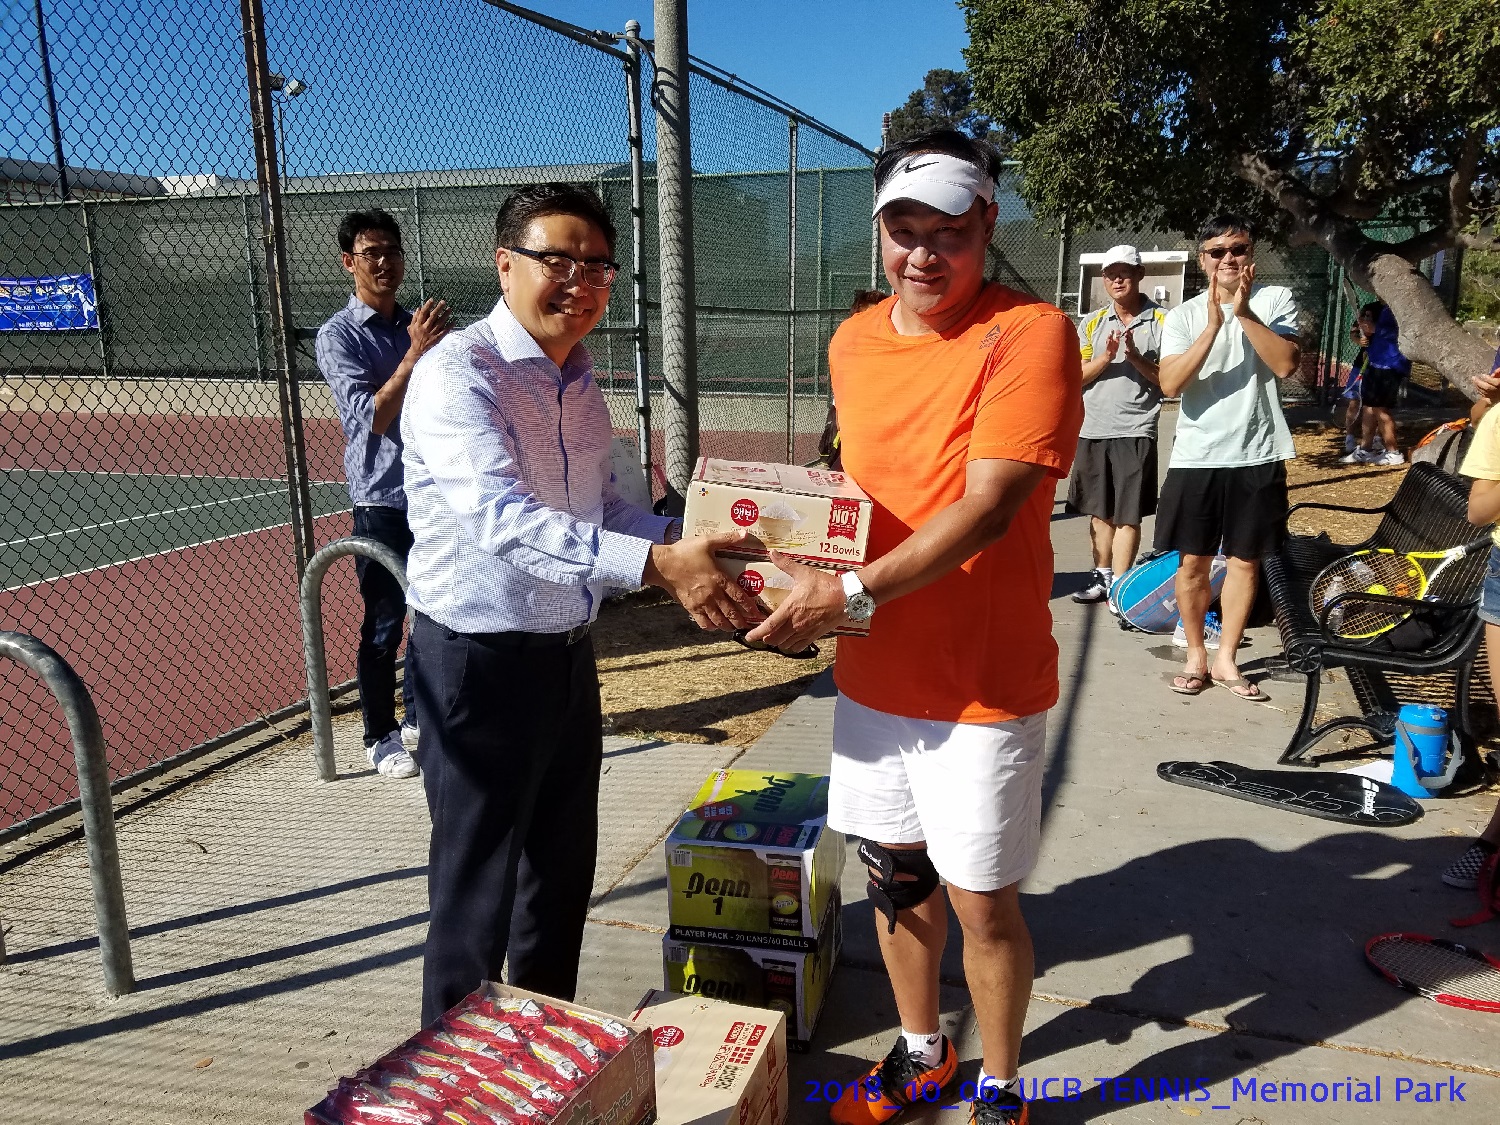 resized_2018_10_06_UCB Tennis at Memorial Park_152215.jpg